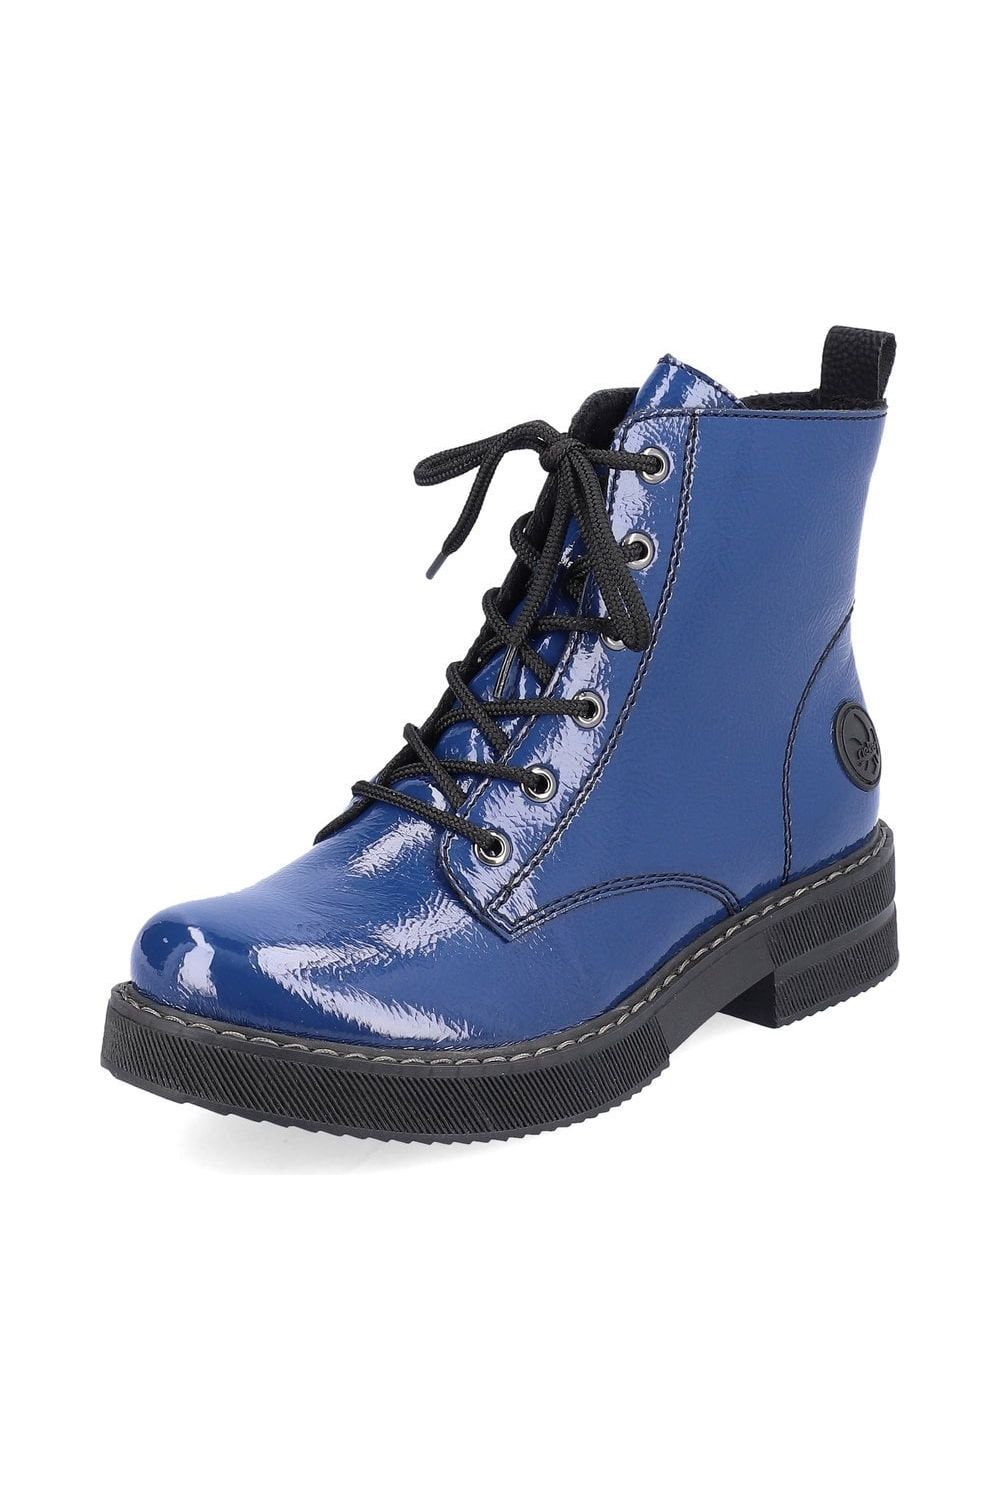 Rieker Womens Boots 72010 15 blue